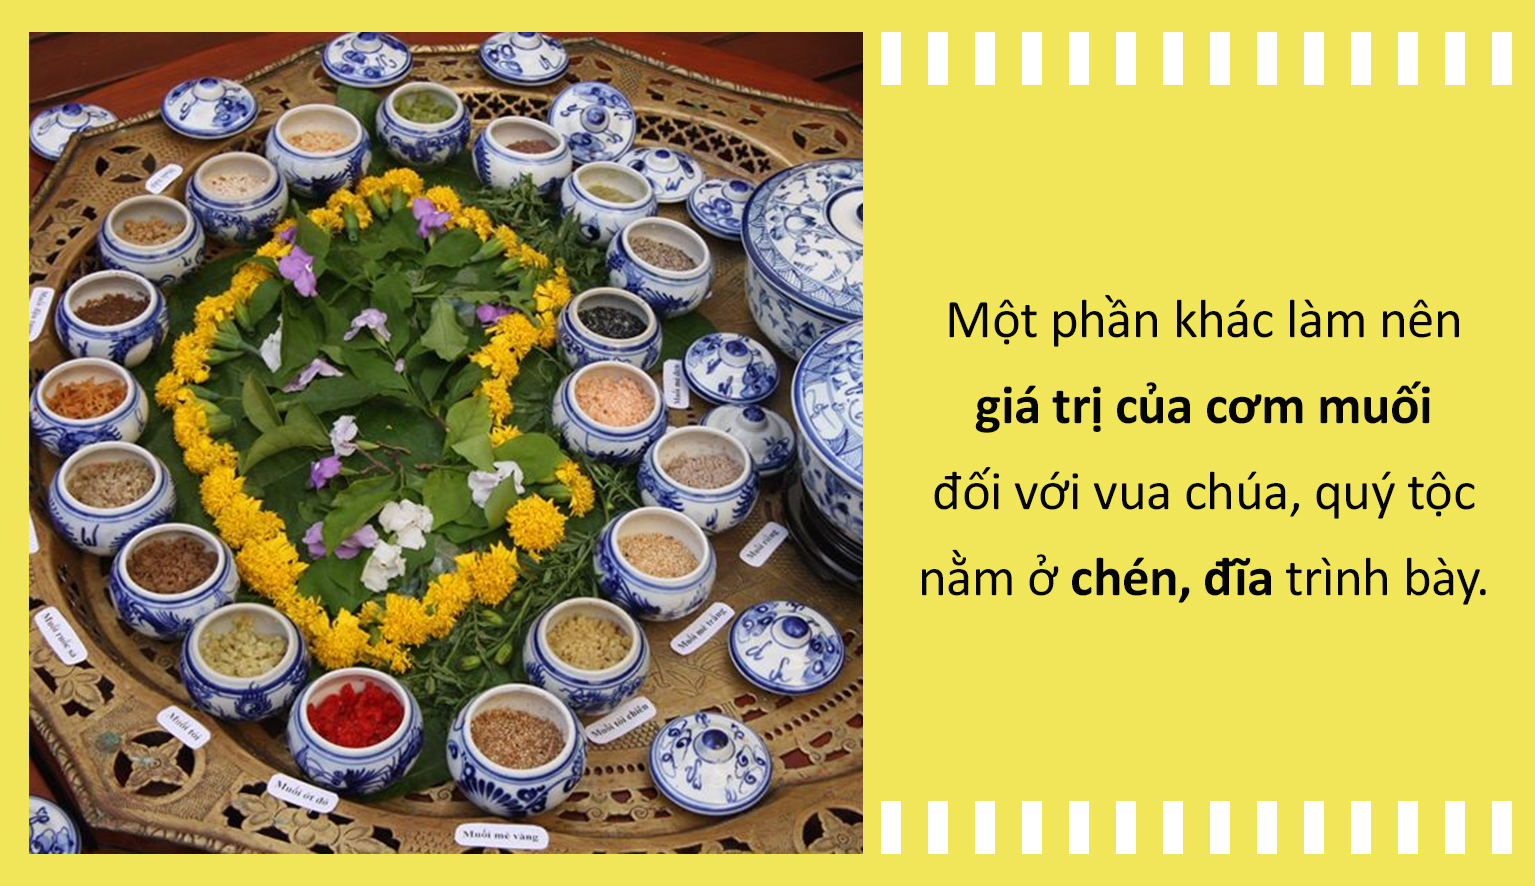 Ẩm thực Việt: Cơm muối - Món 'sơn trân hải vị' ở xứ Huế, có tiền cũng khó mà ăn - 4